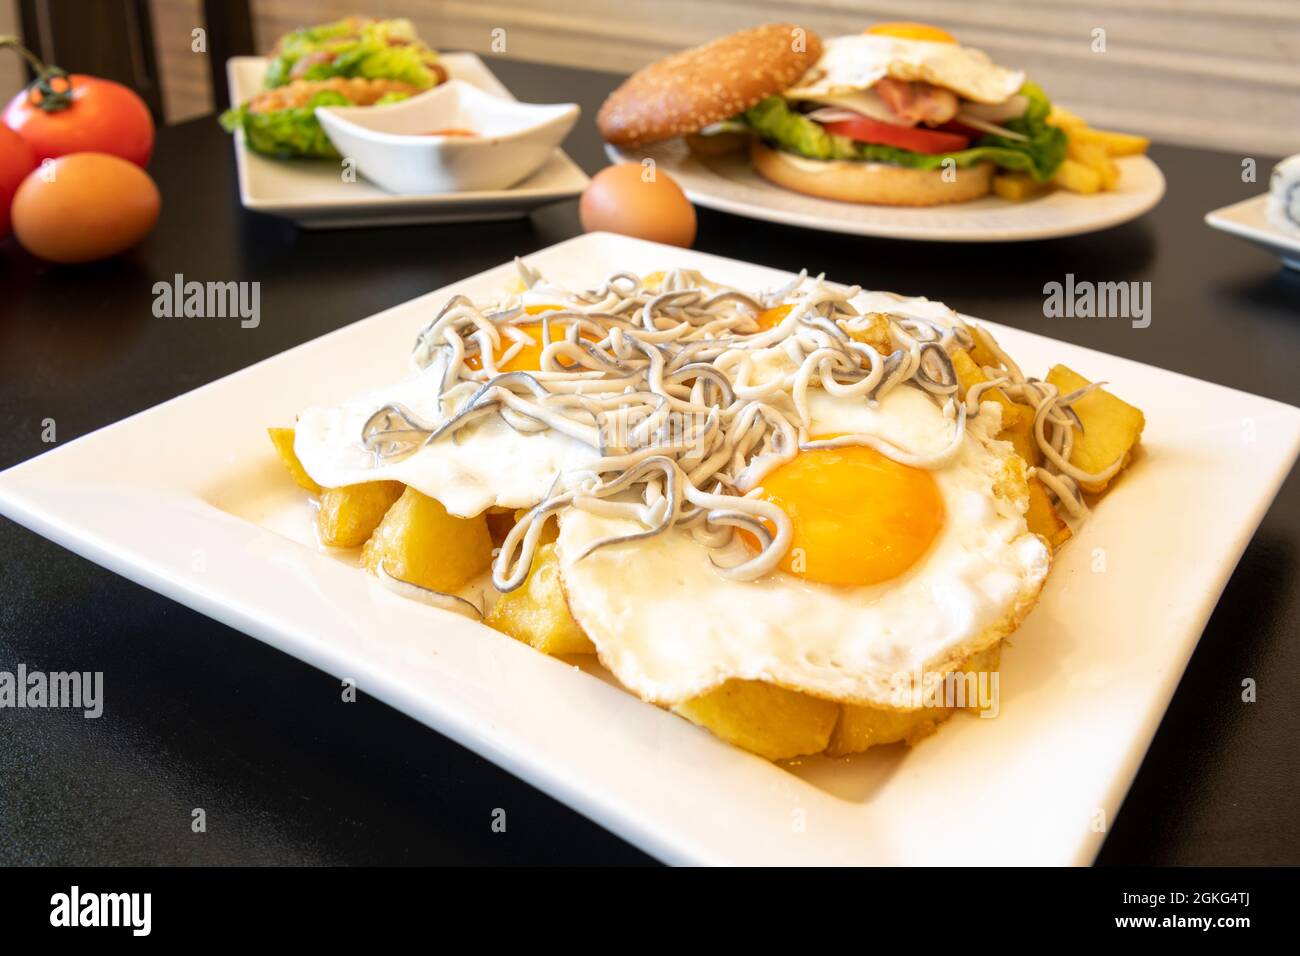 Tapa typiquement espagnol d'œufs cassés avec anguilles à partager sur une table de restaurant avec d'autres plats en arrière-plan Banque D'Images